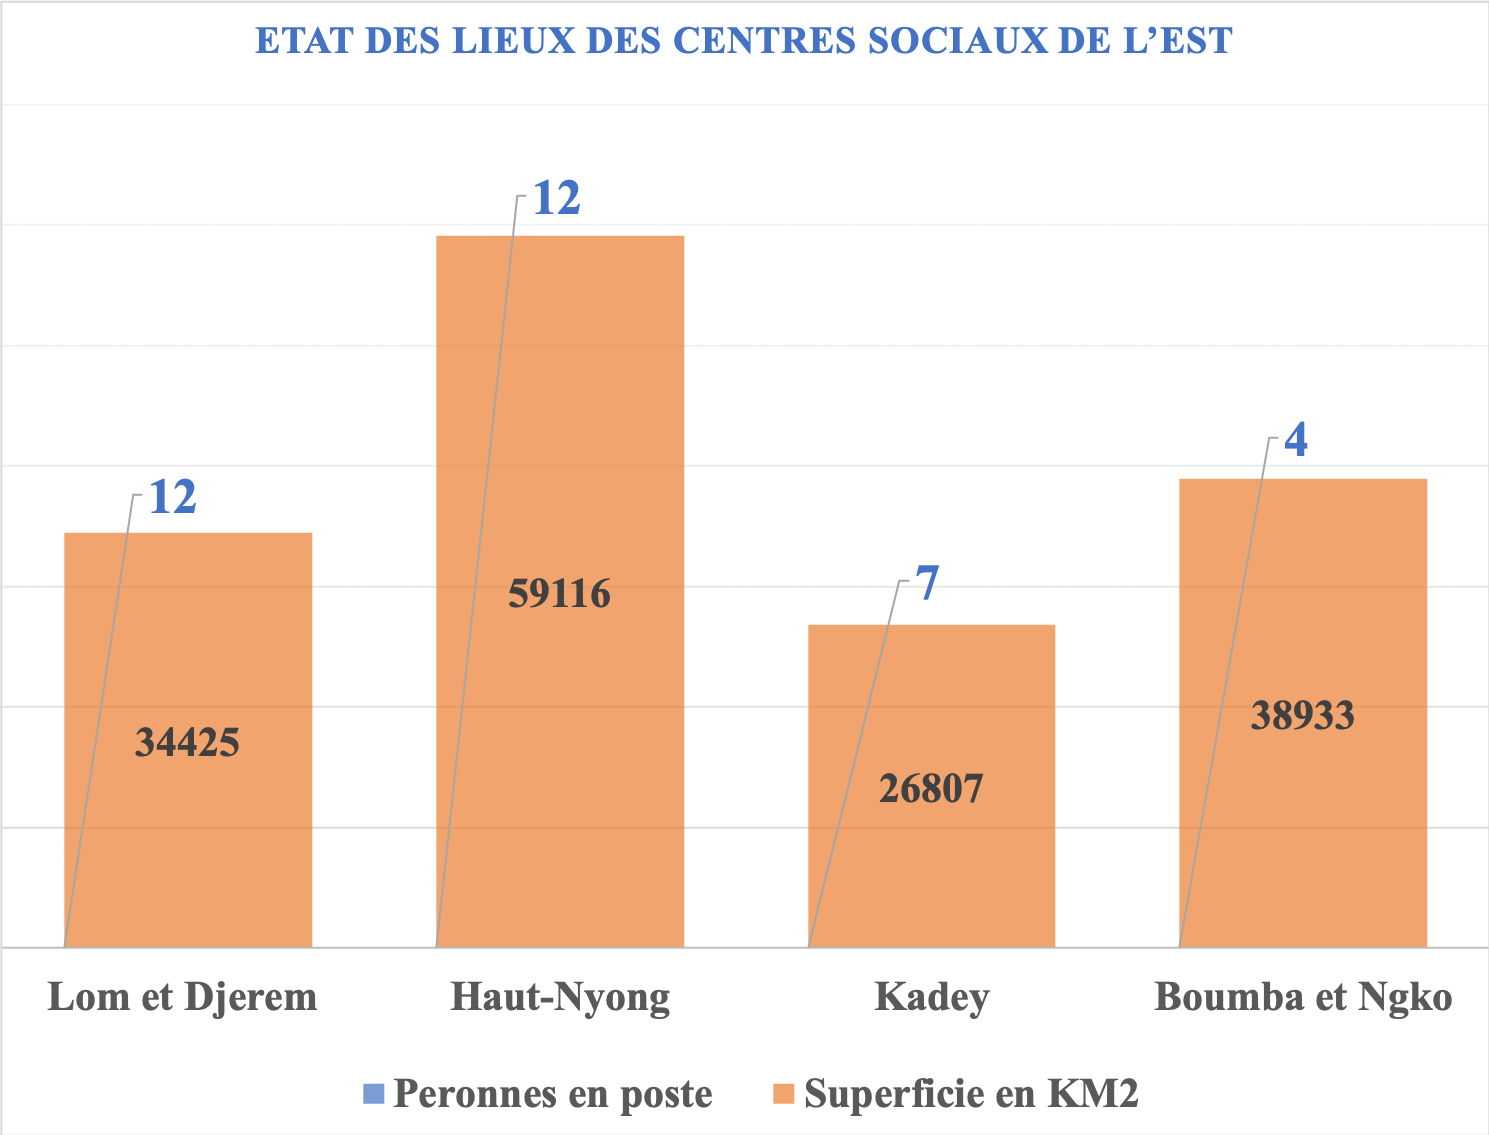 Covid-19 : Plus de 80% des Centres sociaux de la région de l’Est en déclin